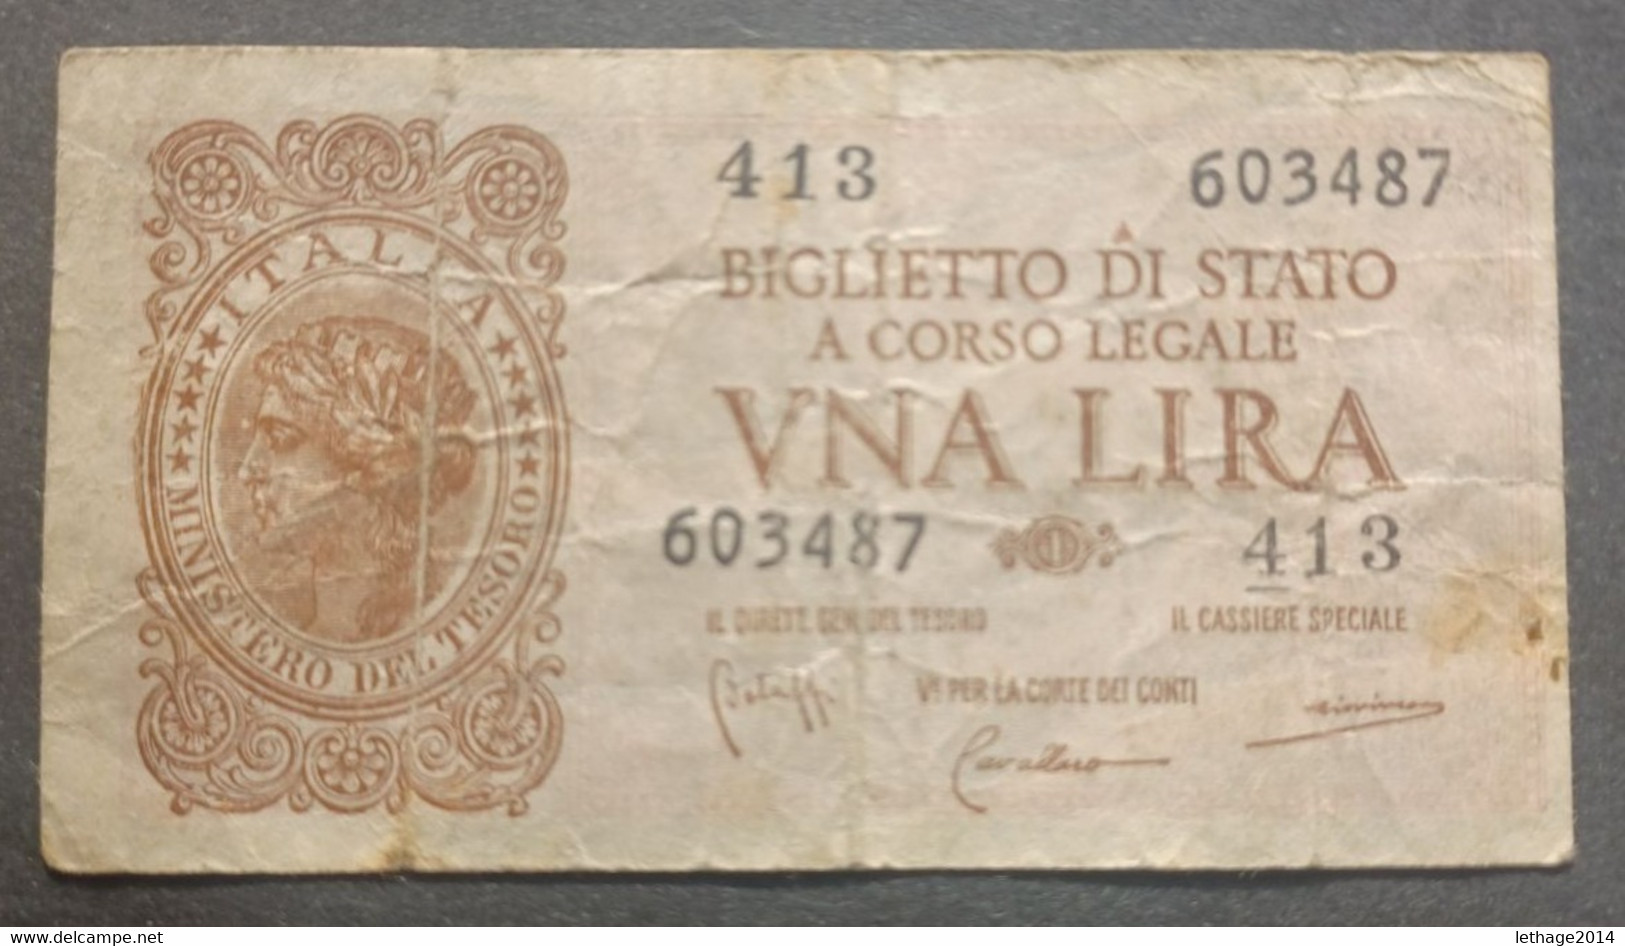 BANKNOTE REGNO D ITALIA 1 LIRA 1944 BOLAFFI CAVALLARO GIOVINCO CIRCULATED - Italia – 1 Lira